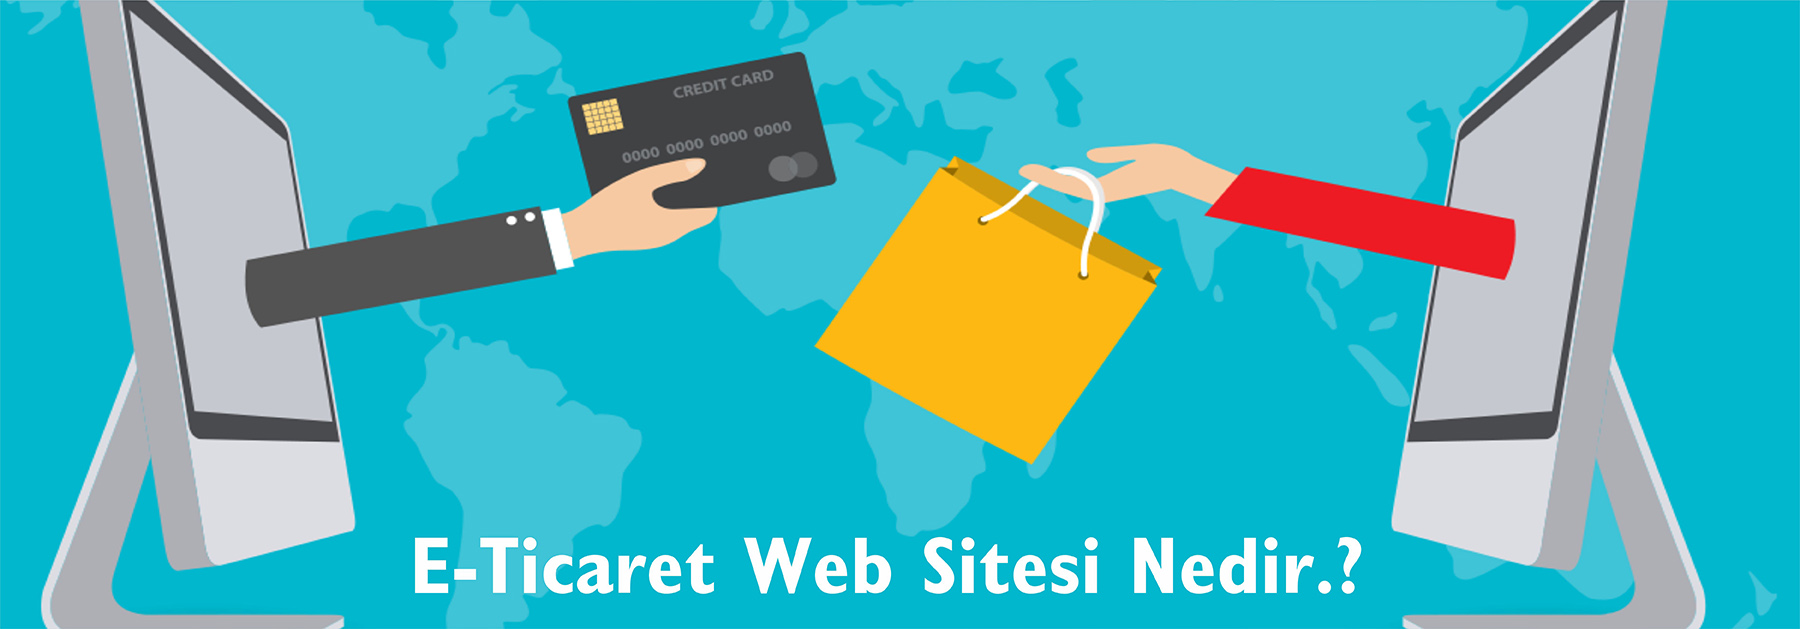 E-Ticaret Web Sitesi